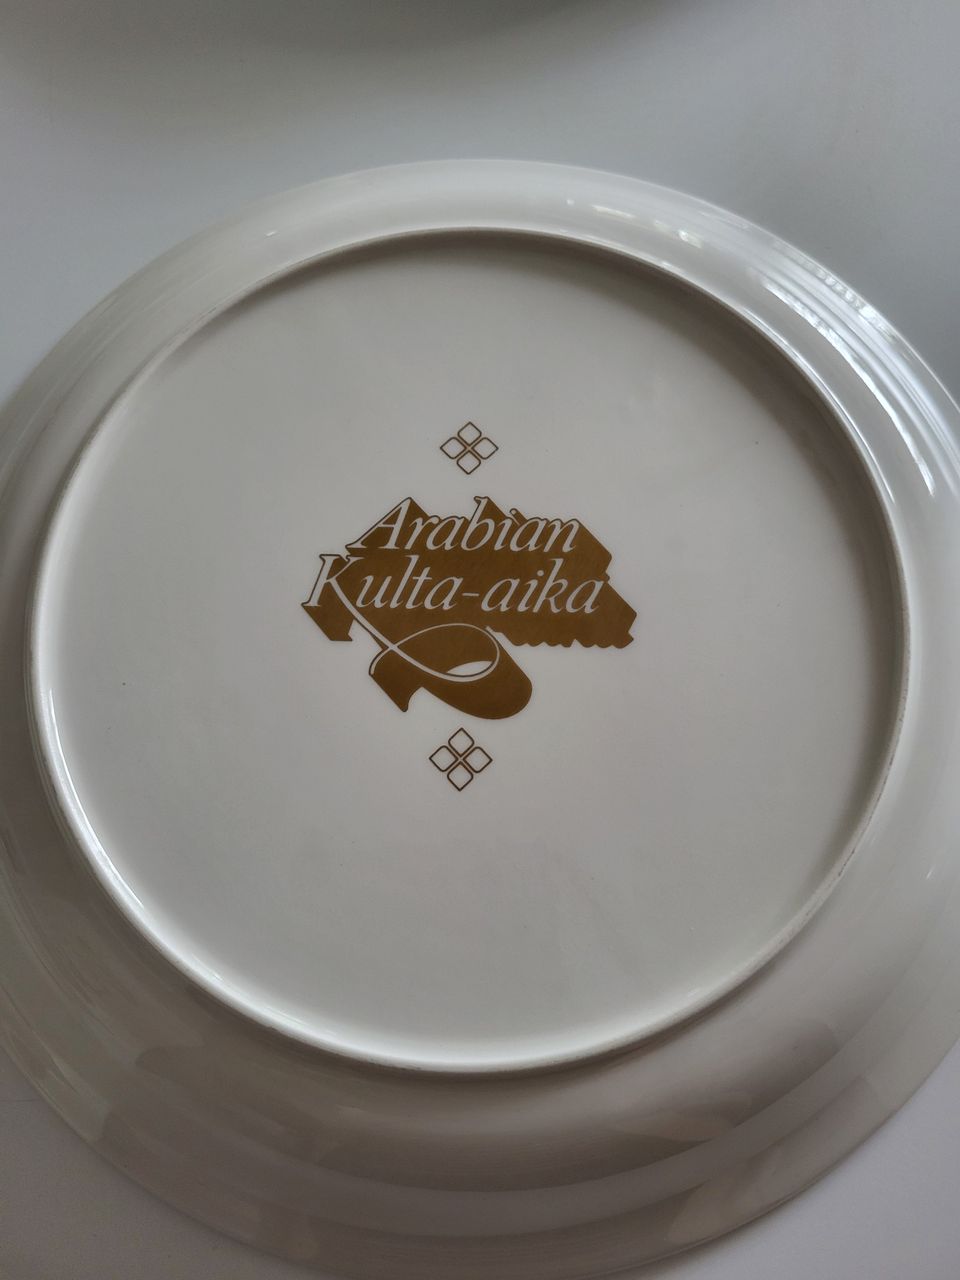 Arabia kulta-aika lautaset